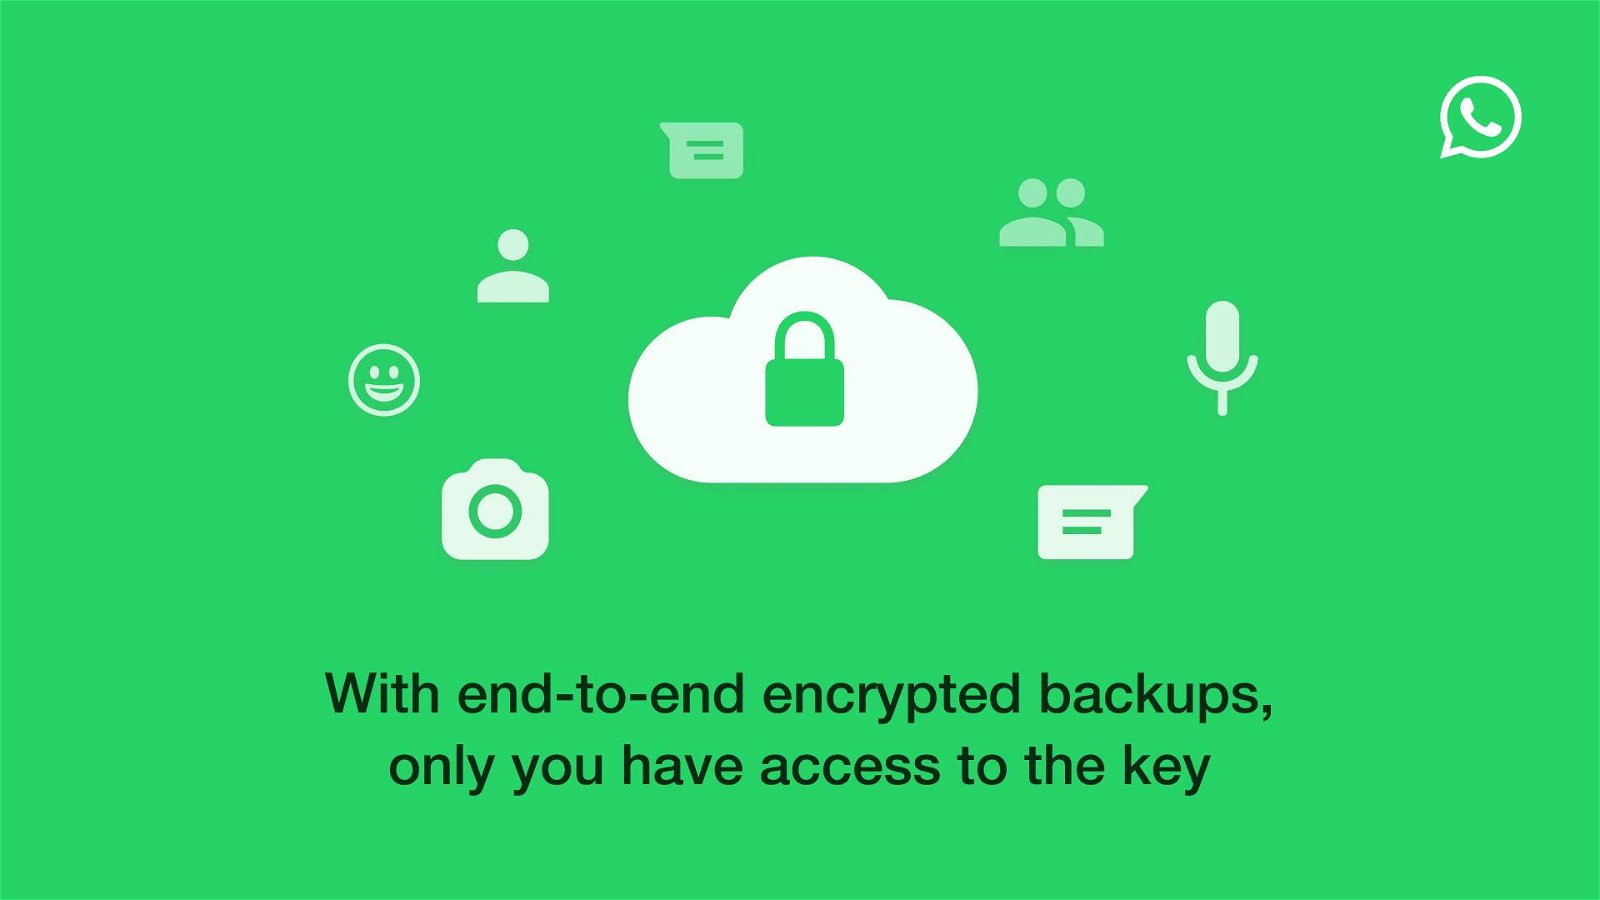 Immagine di WhatsApp: iCloud non accederà ai backup crittografati end-to-end